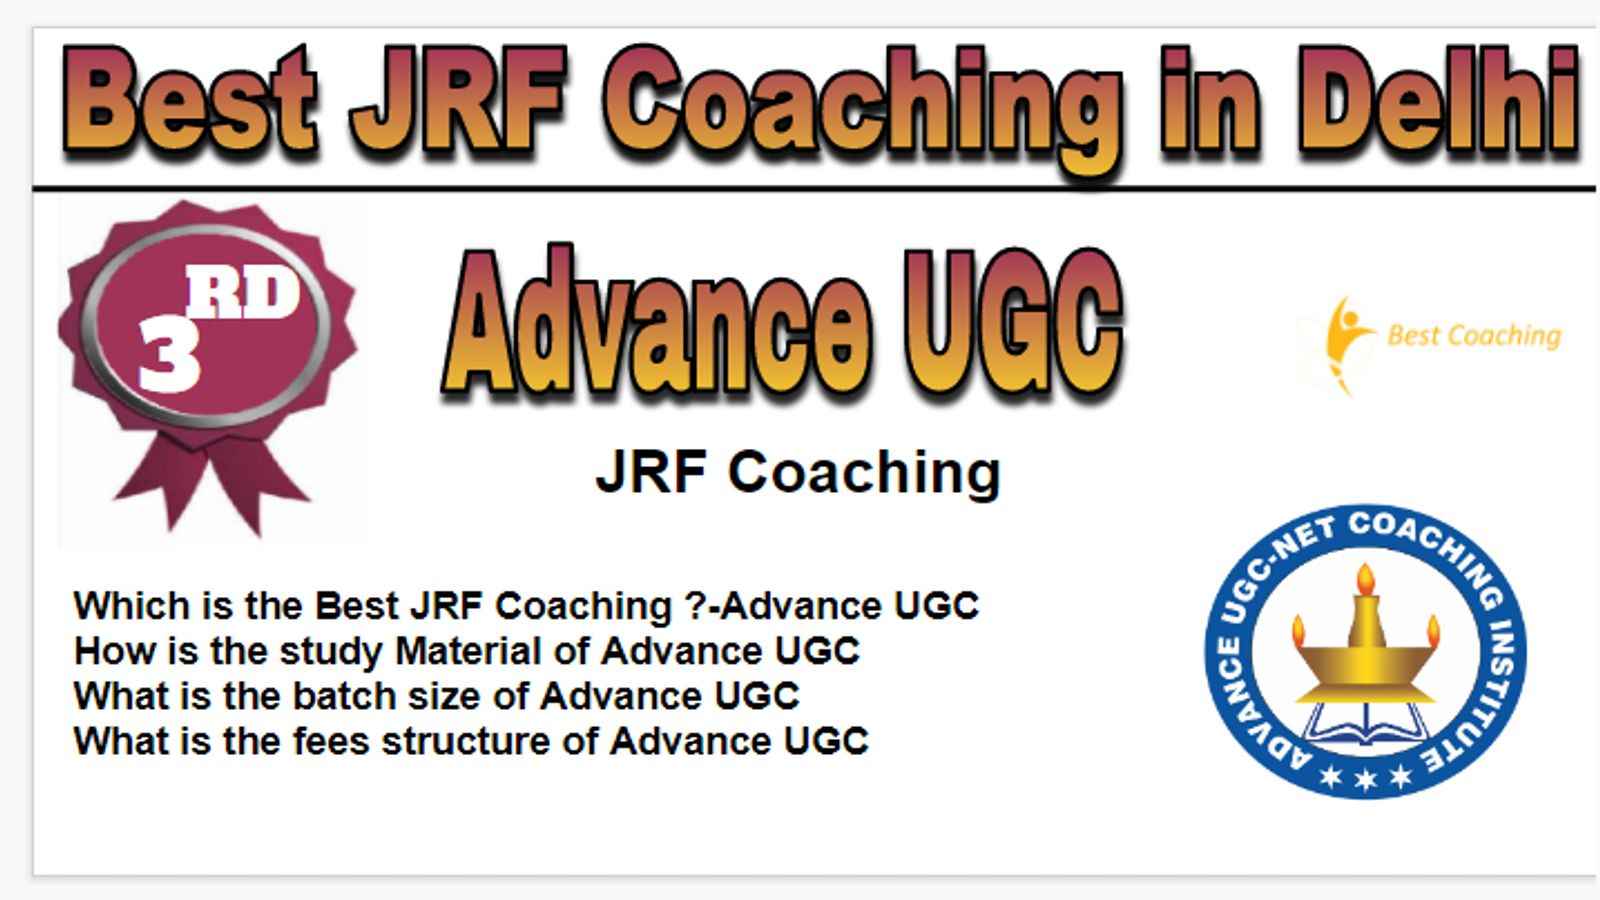 Rank 3 Best JRF Coaching in Delhi